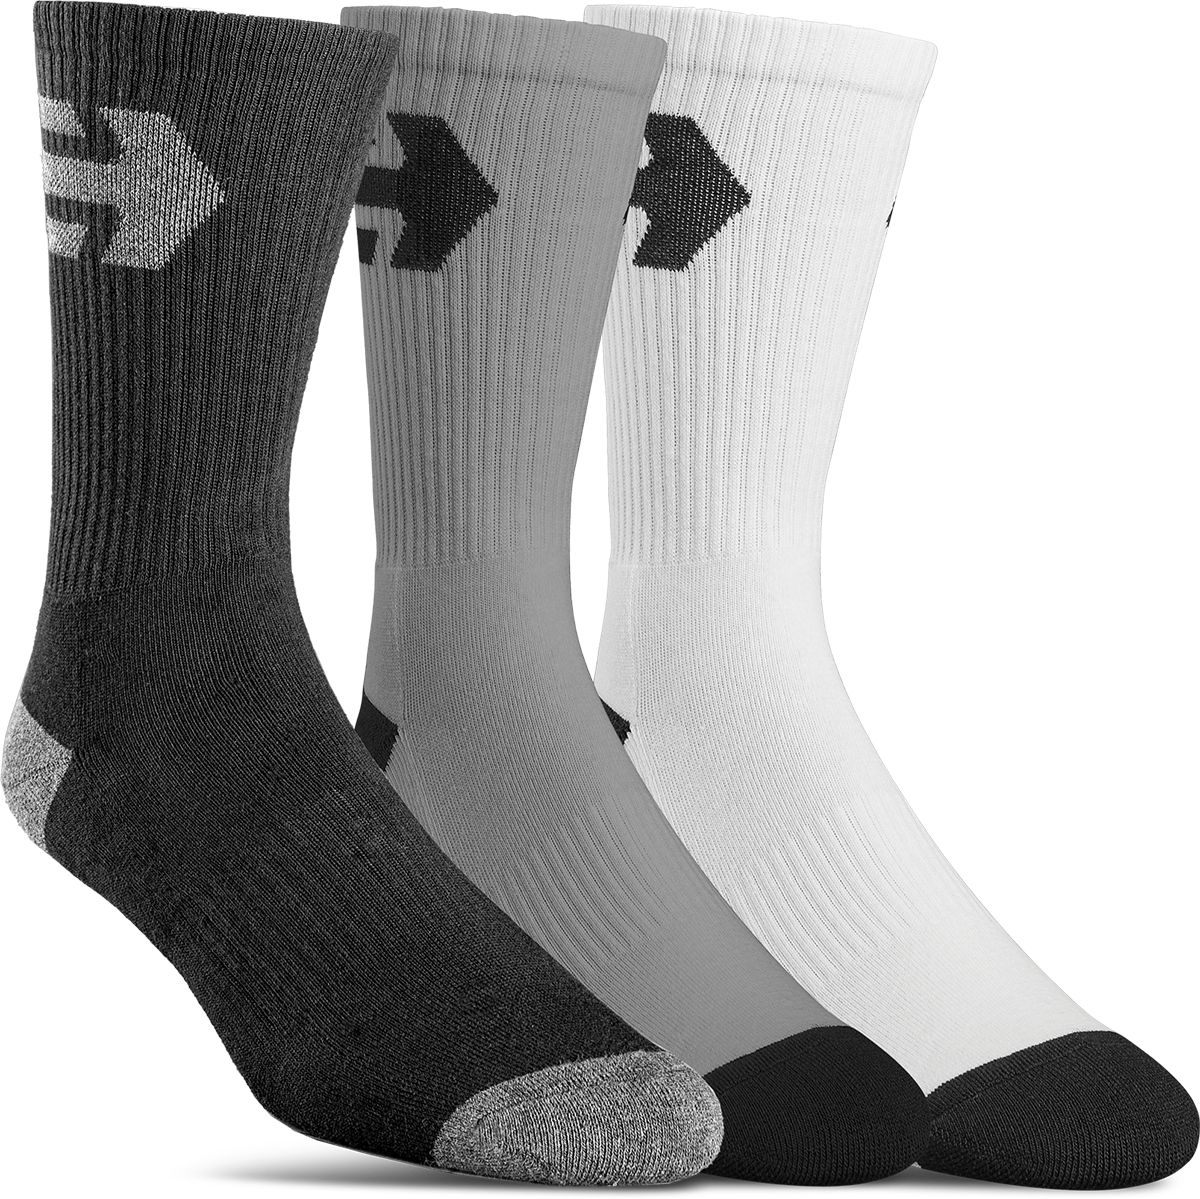 ponožky ETNIES DIRECT 2 SOCKS (3 Pack) Assorted